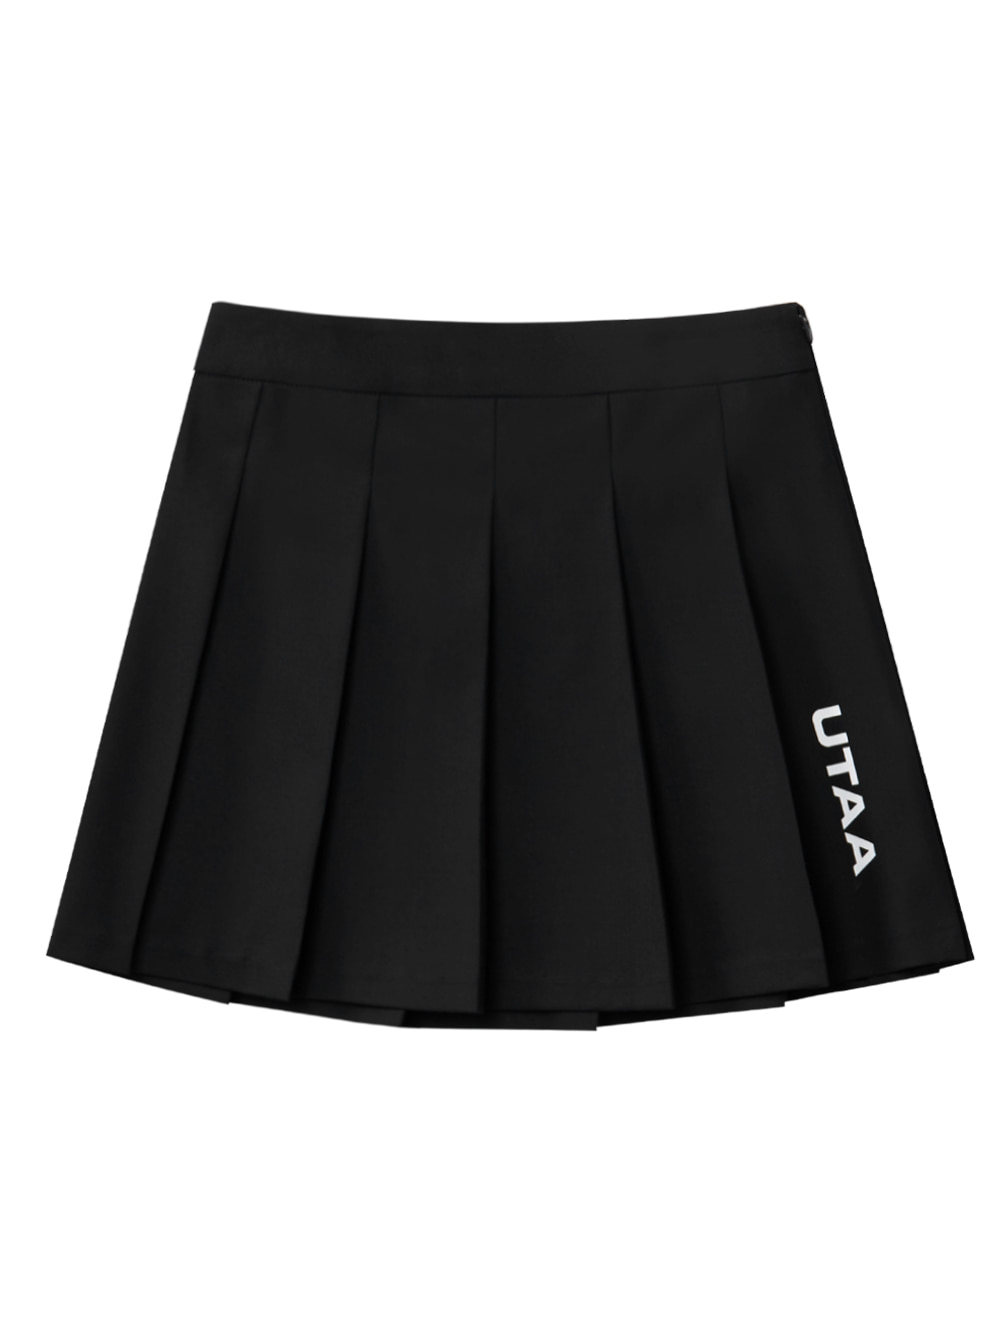 UTAA Basic Logo Flare Fan Skirt : Black (UB2SKF562BK)